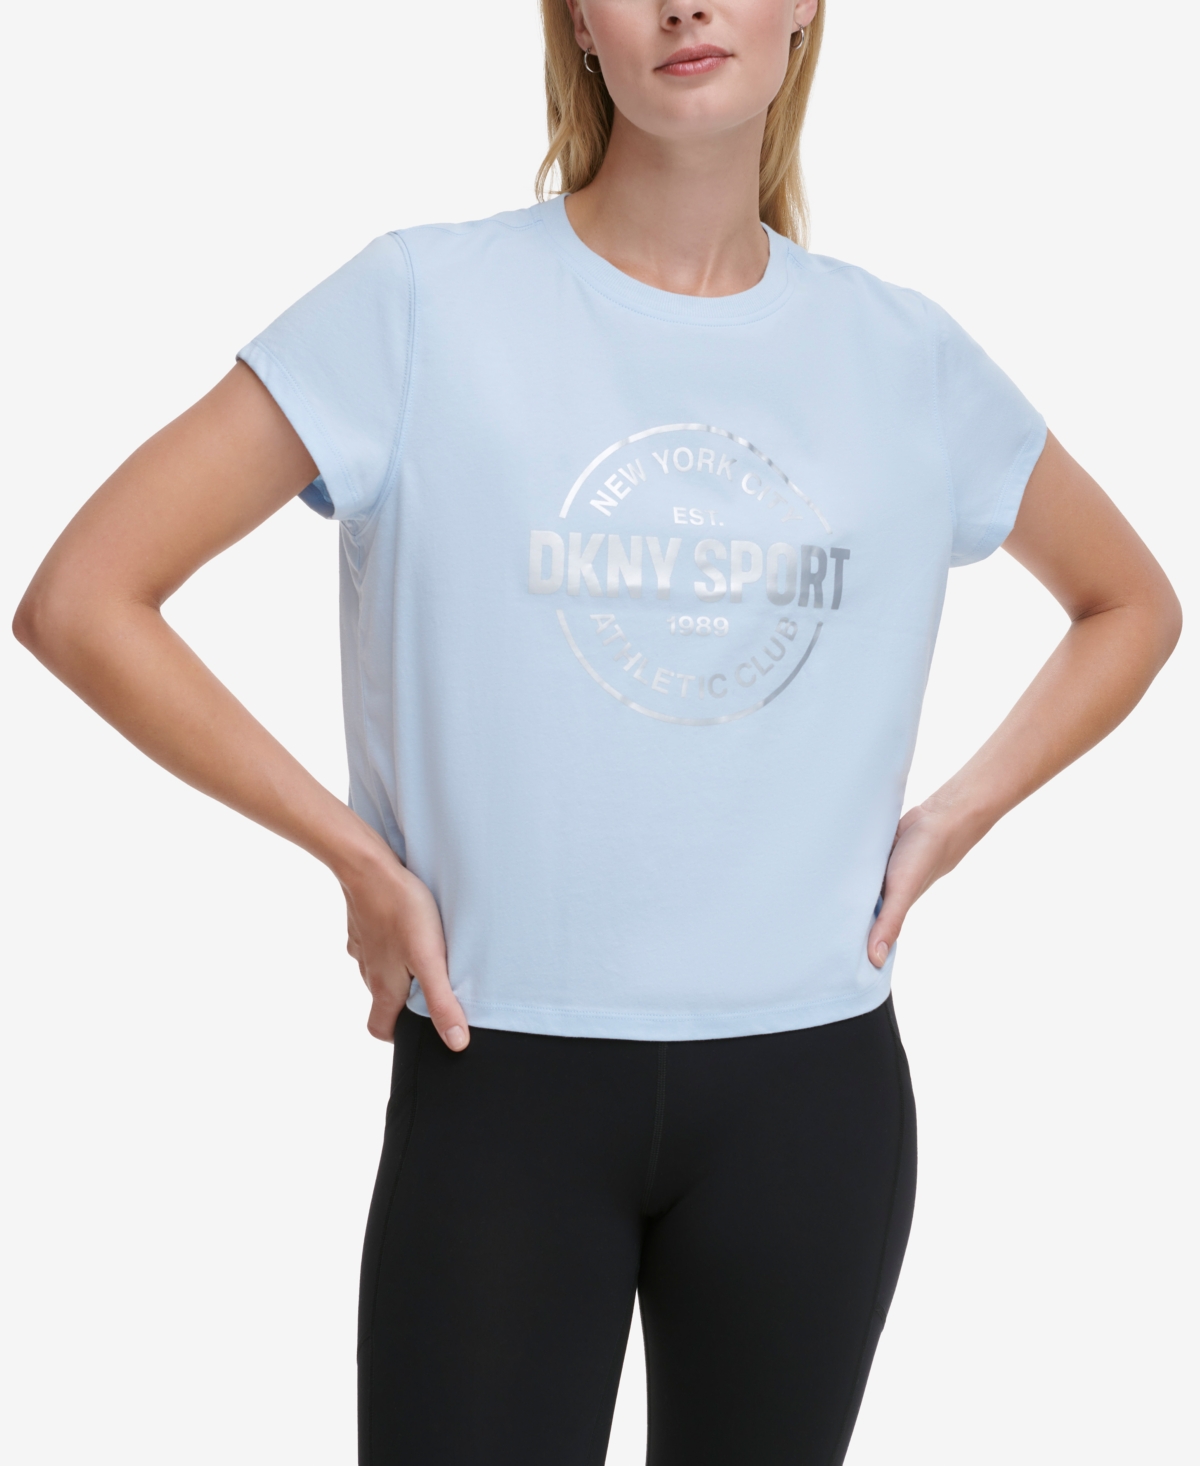 Dkny Sport Women's Medallion Logo Cropped T-shirt In Skyway,silver